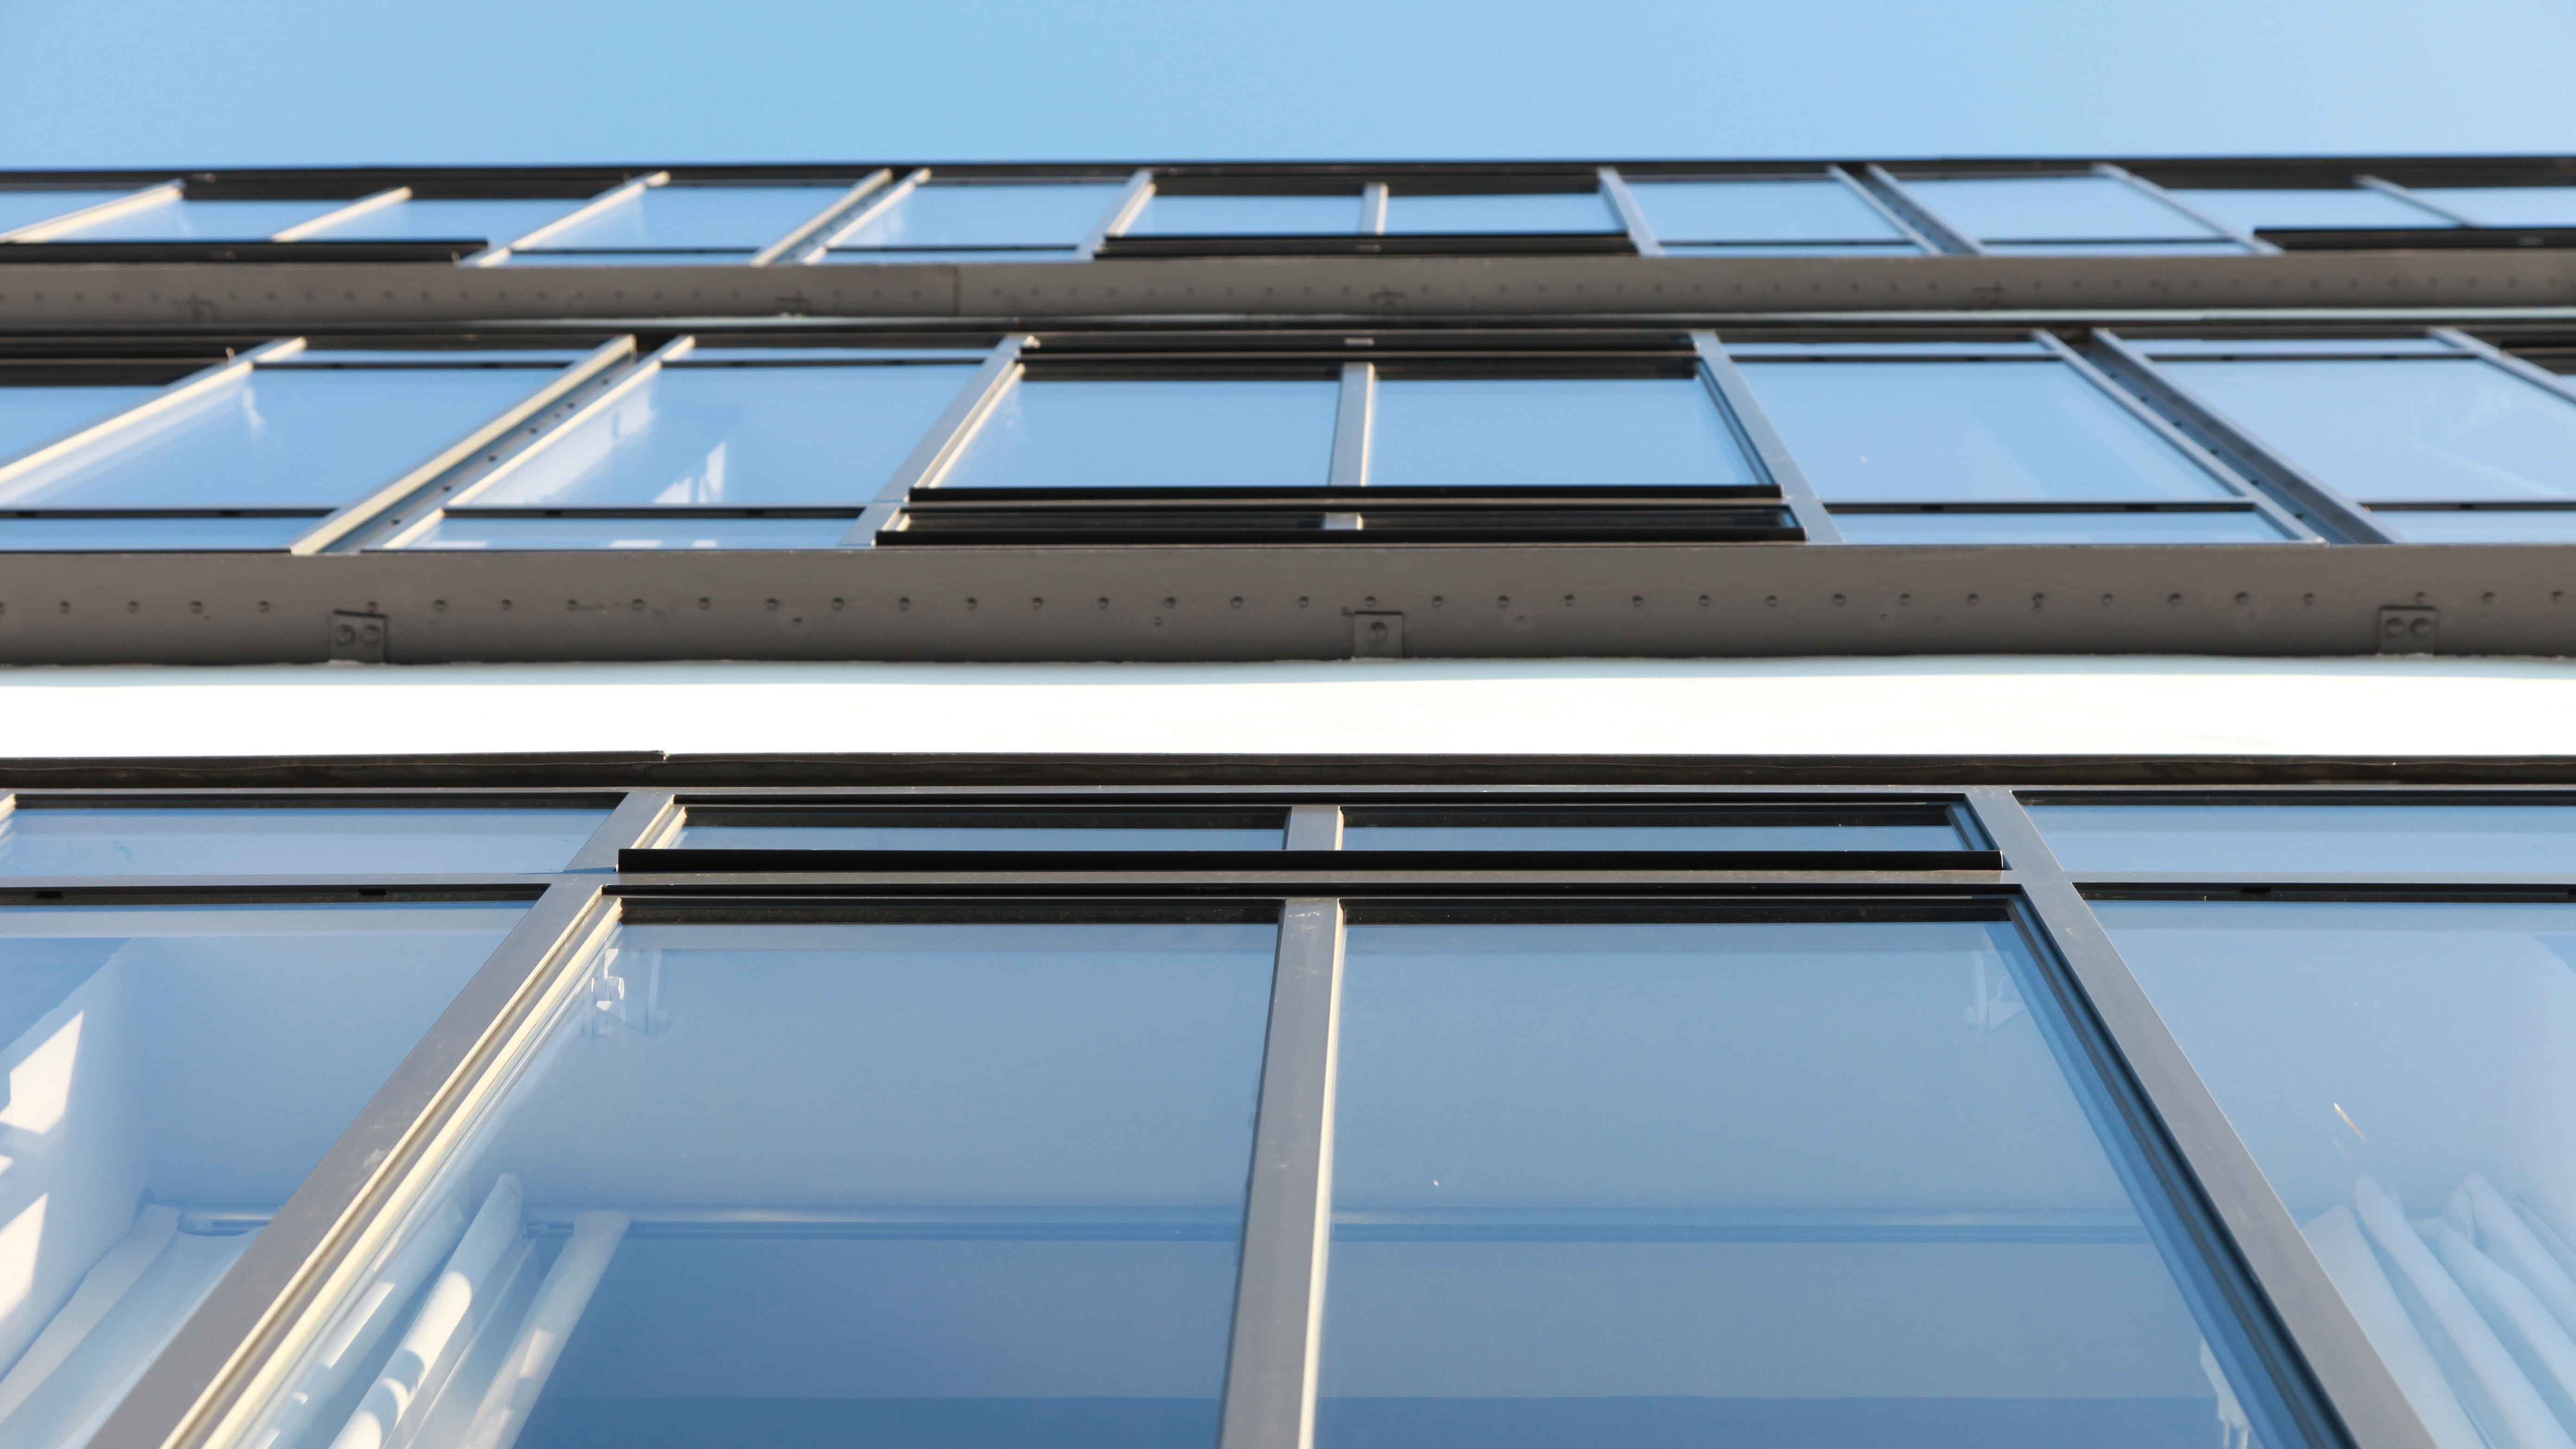 Bauhaus Dessau Atelier north facade with steel glazed windows